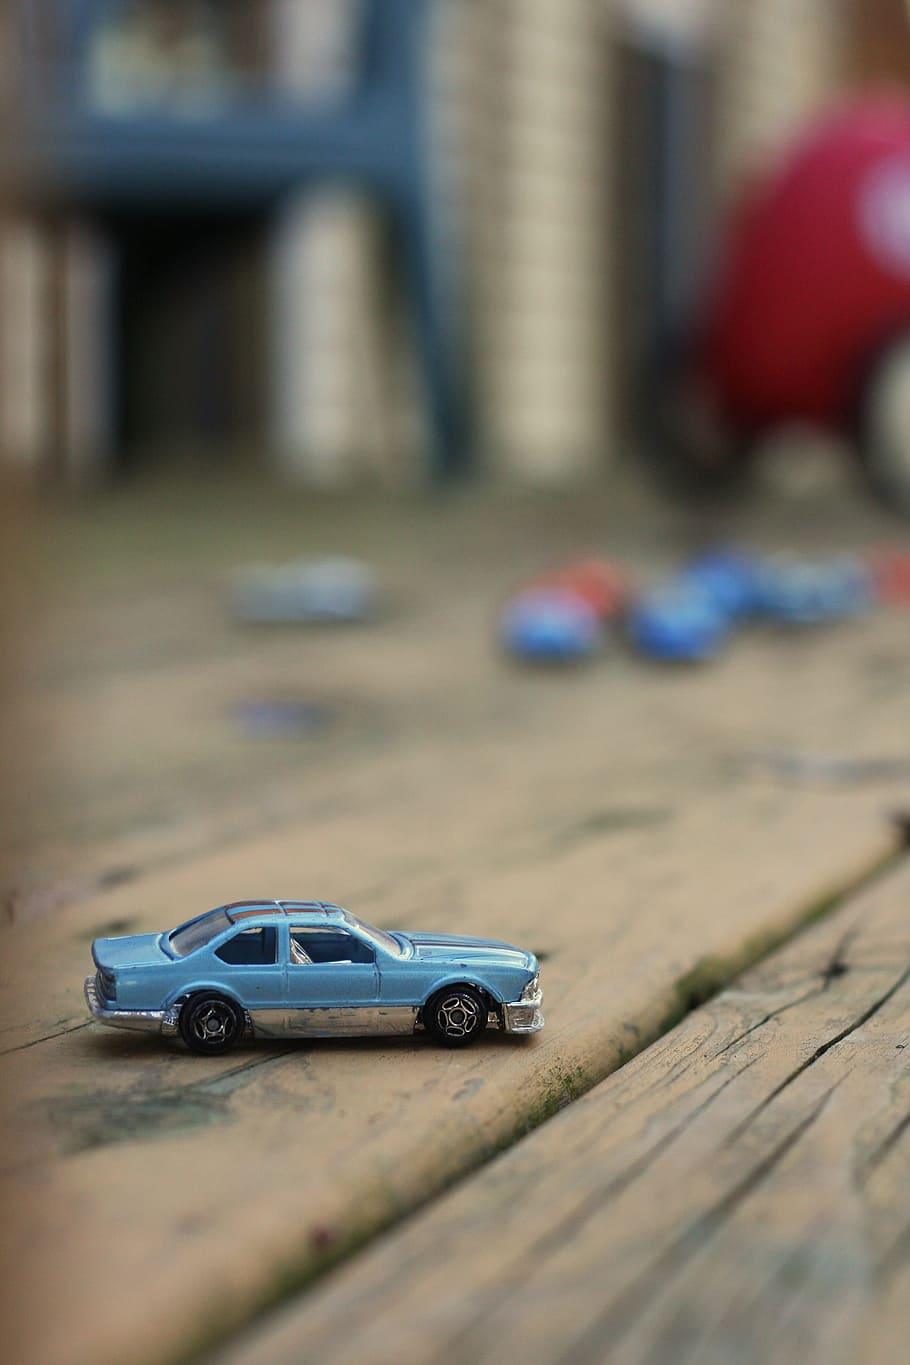 selectivo, fotografía de enfoque, azul, modelo a escala coupé, marrón, madera, superficie, caja de cerillas, juguete, coche